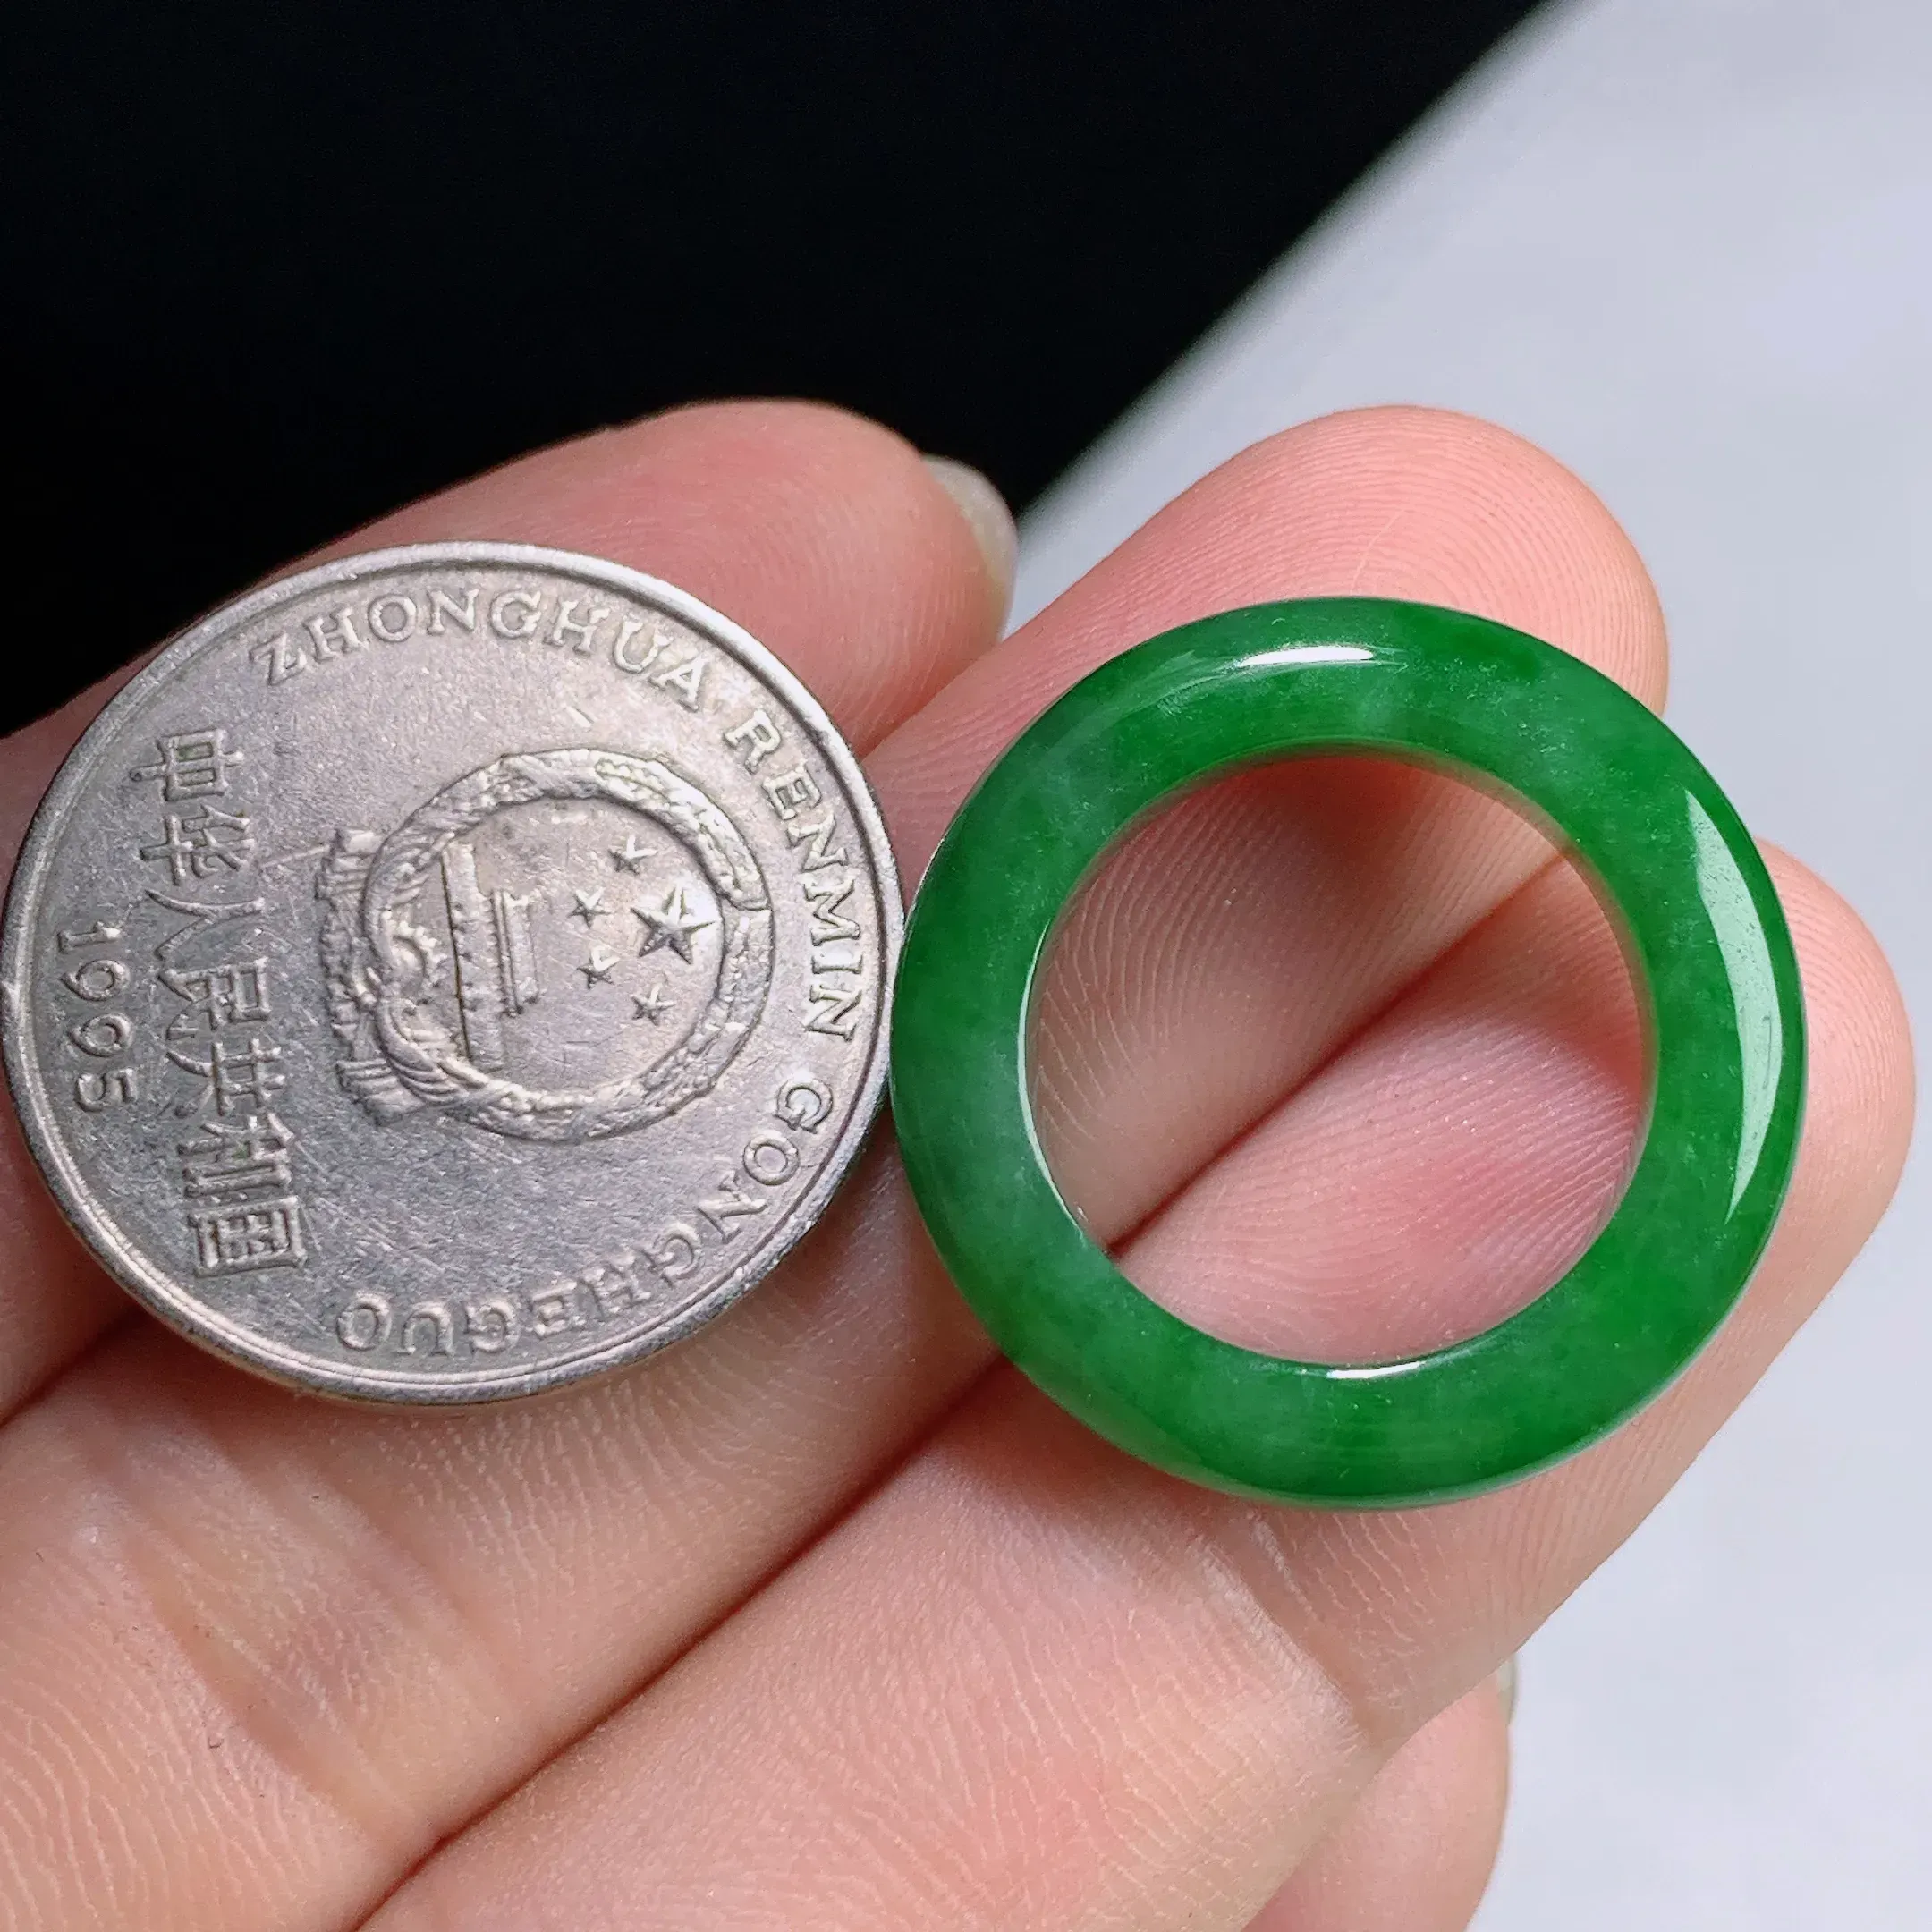 缅甸天然A货翡翠冰润满绿戒指指环 整体尺寸:16.5/5.7/4mm